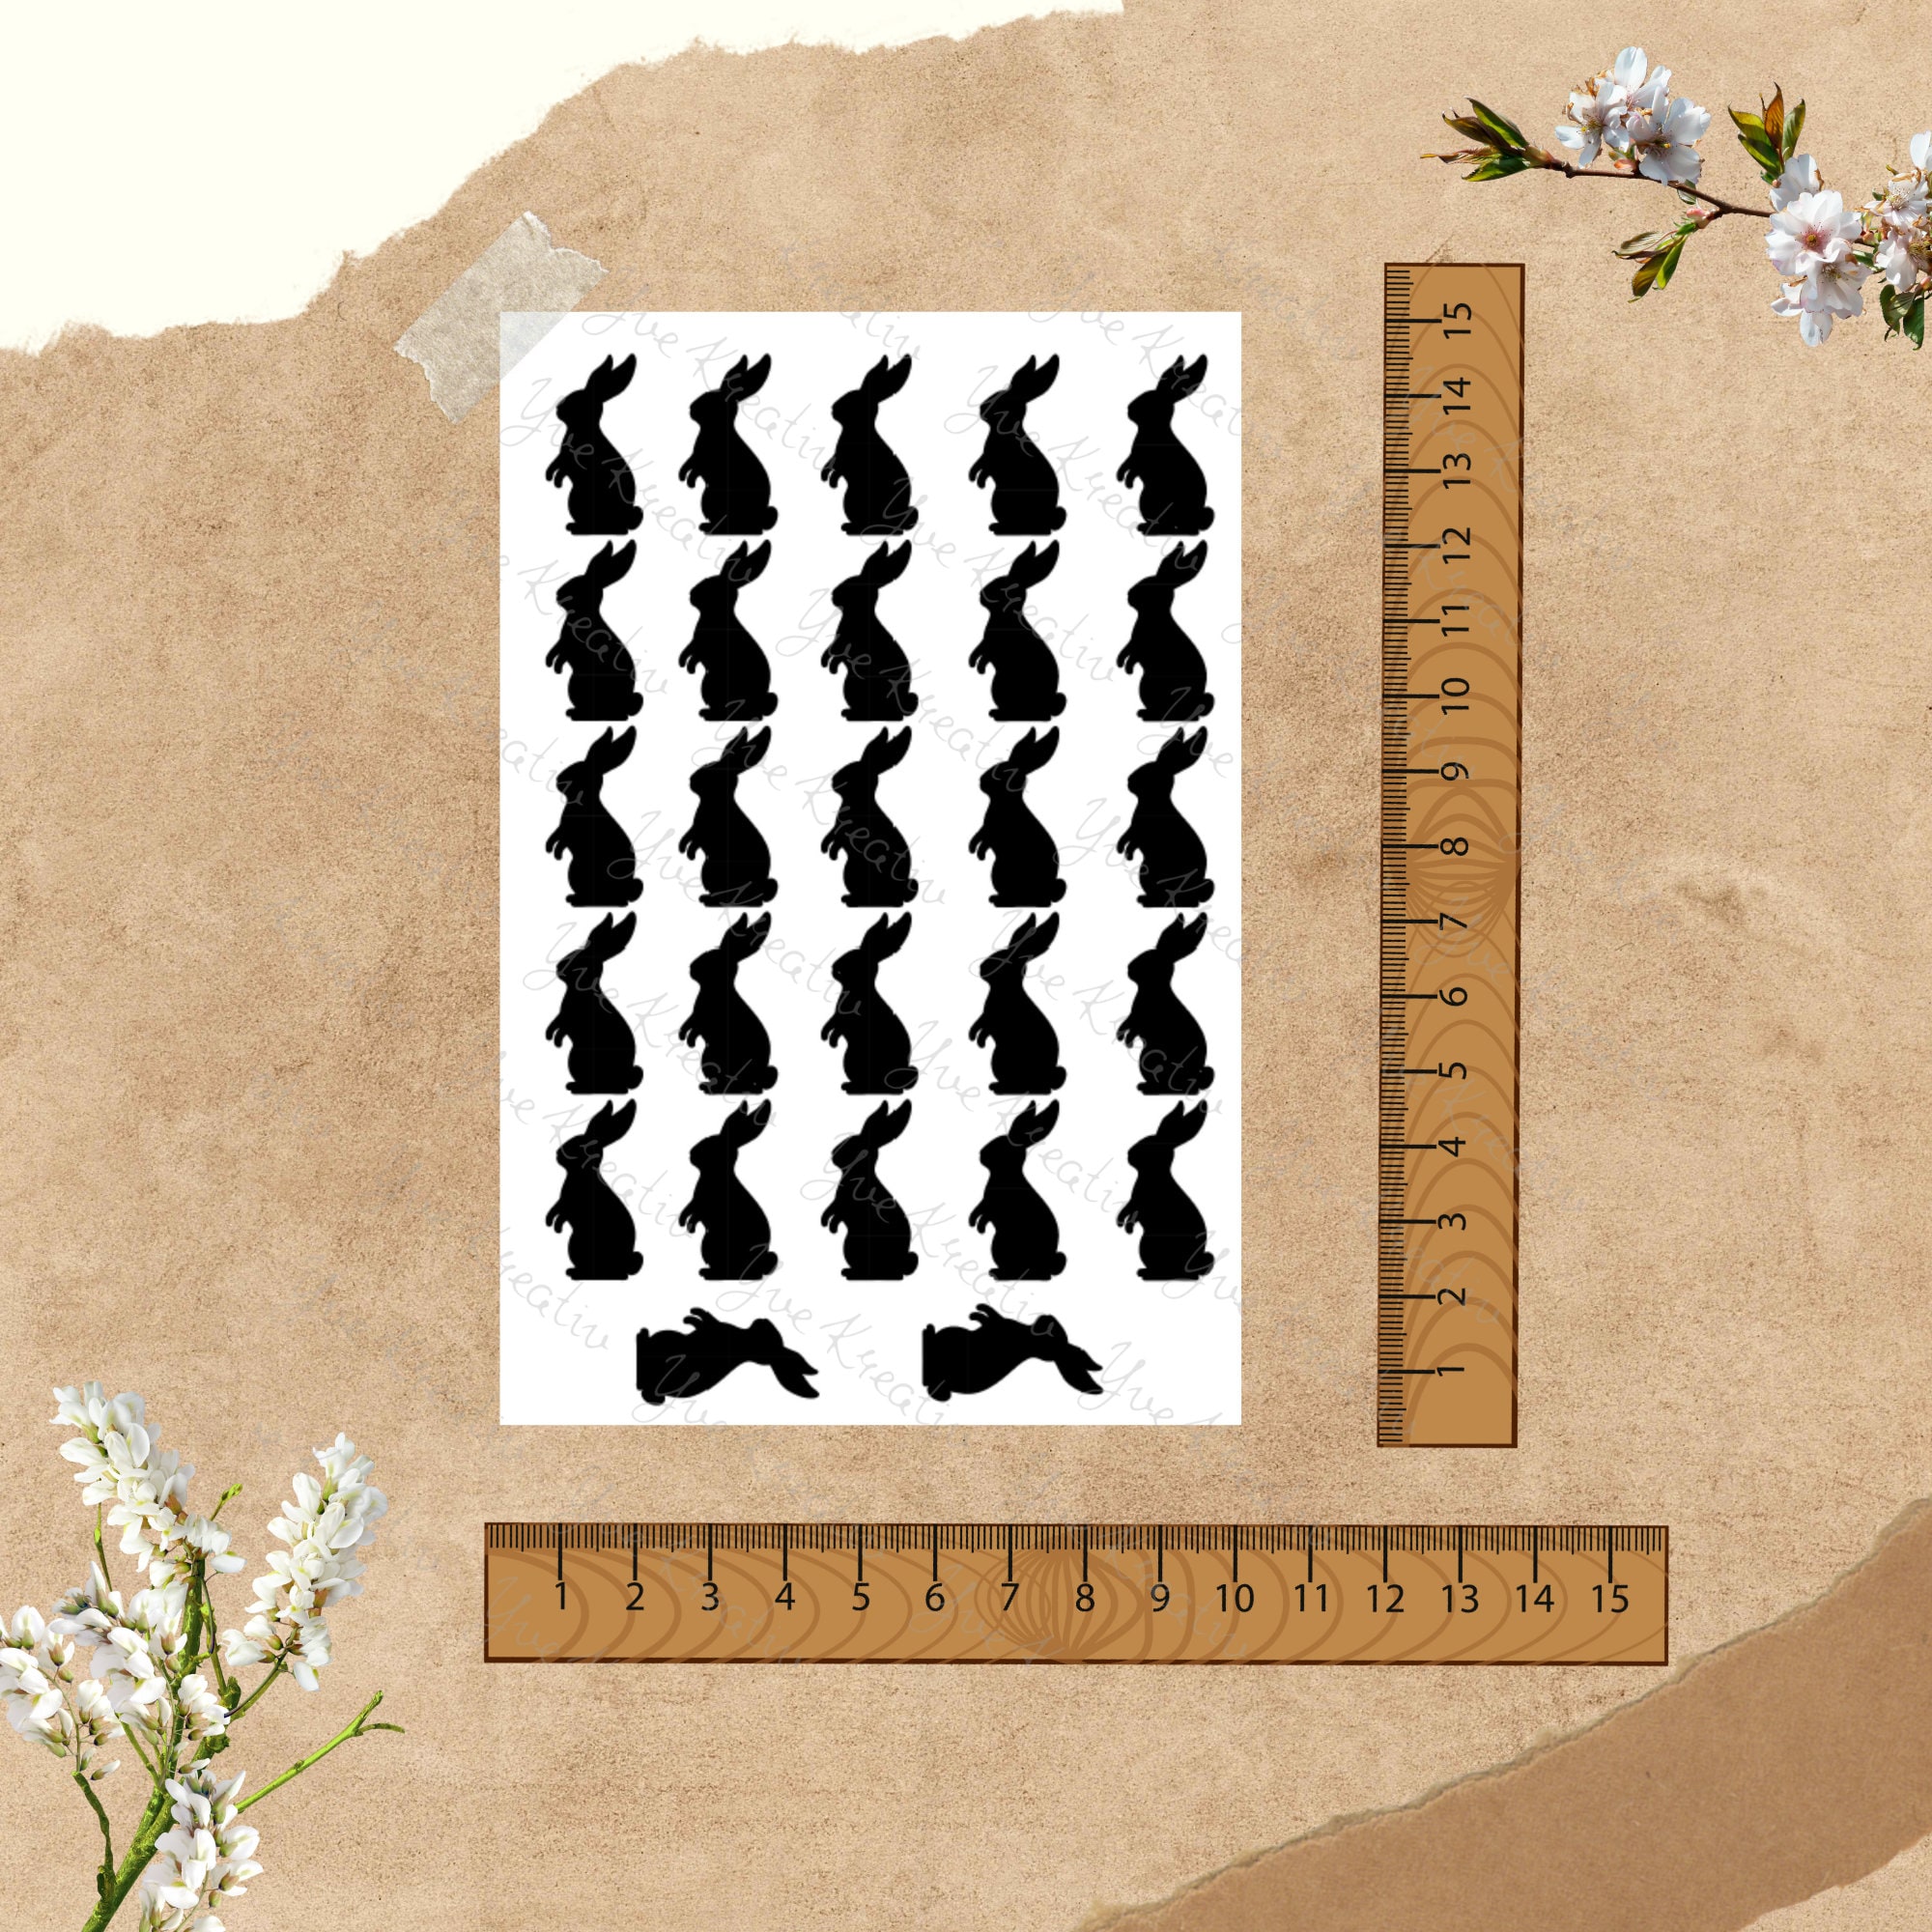 Sticker Bogen - Ostern Hase | 27 Sticker pro Bogen - Journal Sticker - Aufkleber 3 Stickerbogen zur Auswahl I Farbe wählbar